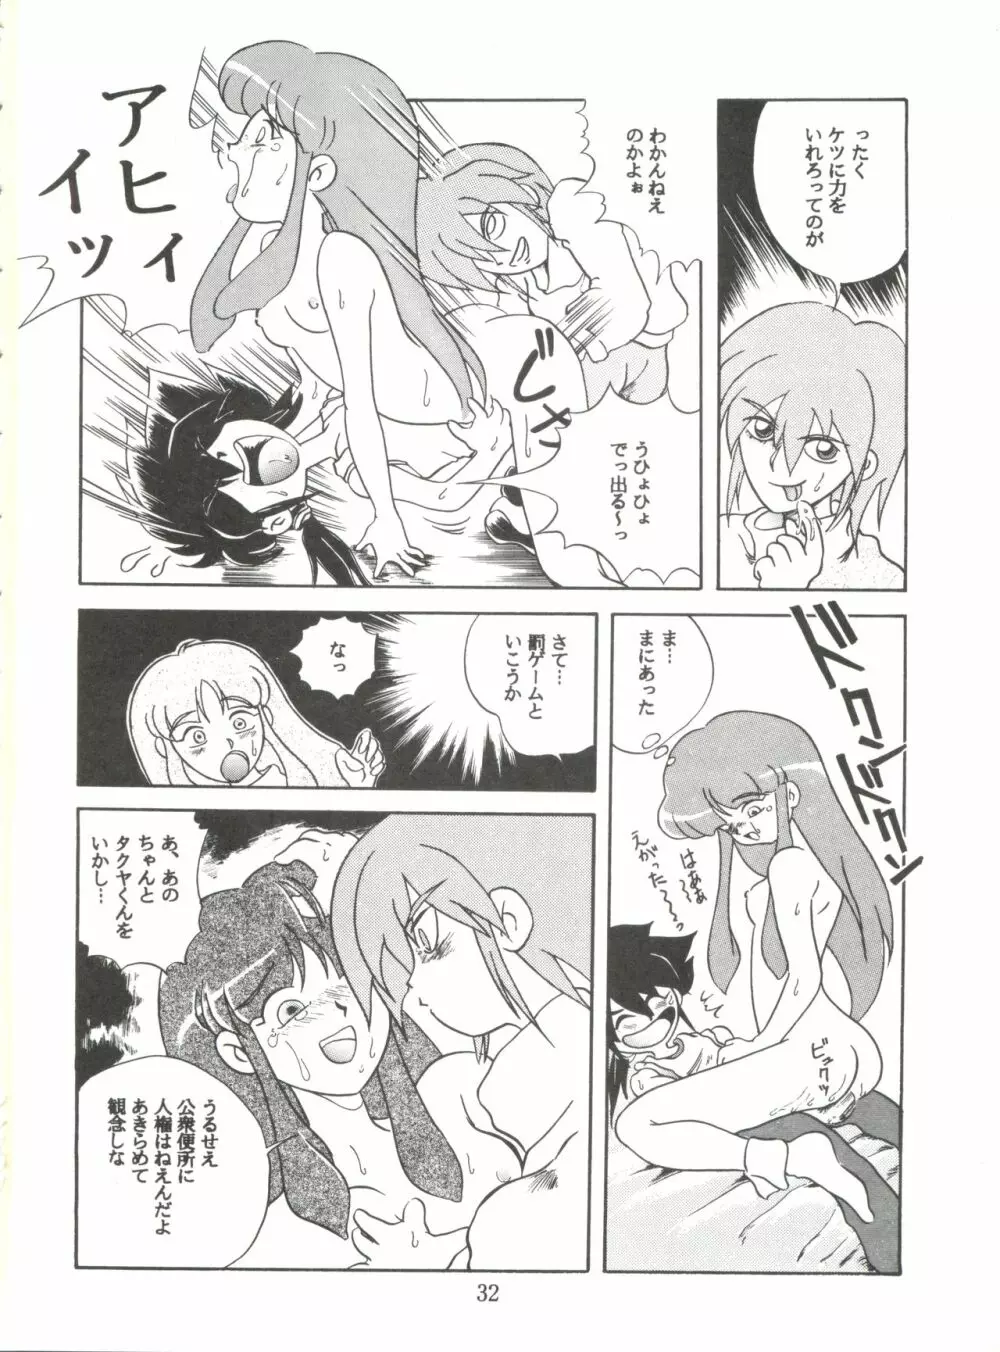 JoRiJoRi No.6 31ページ